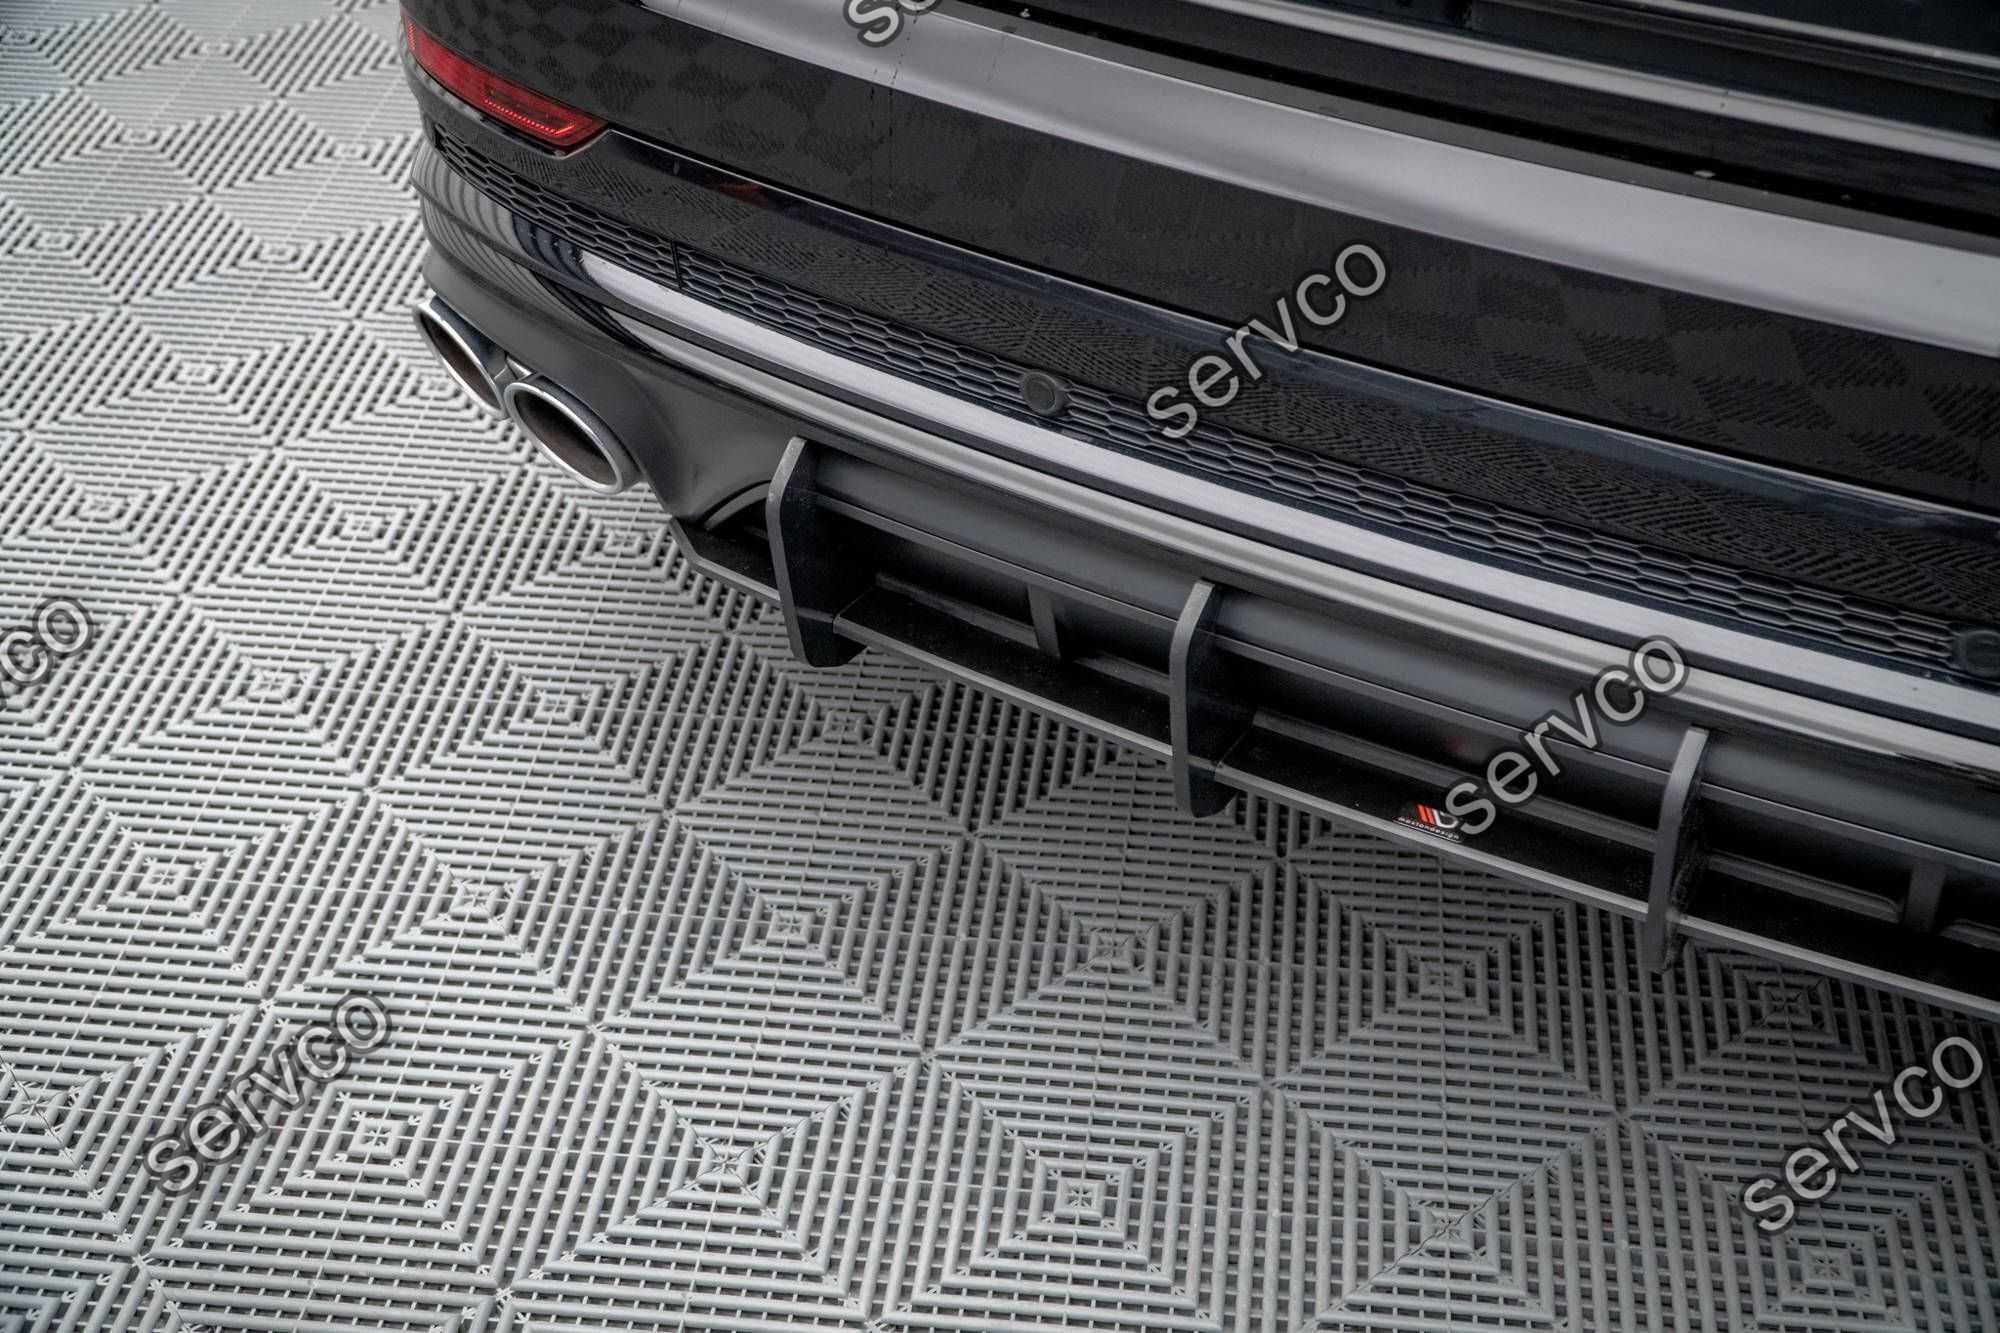 Prelungire difuzor bara spate Audi SQ8 Mk1 2020- v4 - Maxton Design